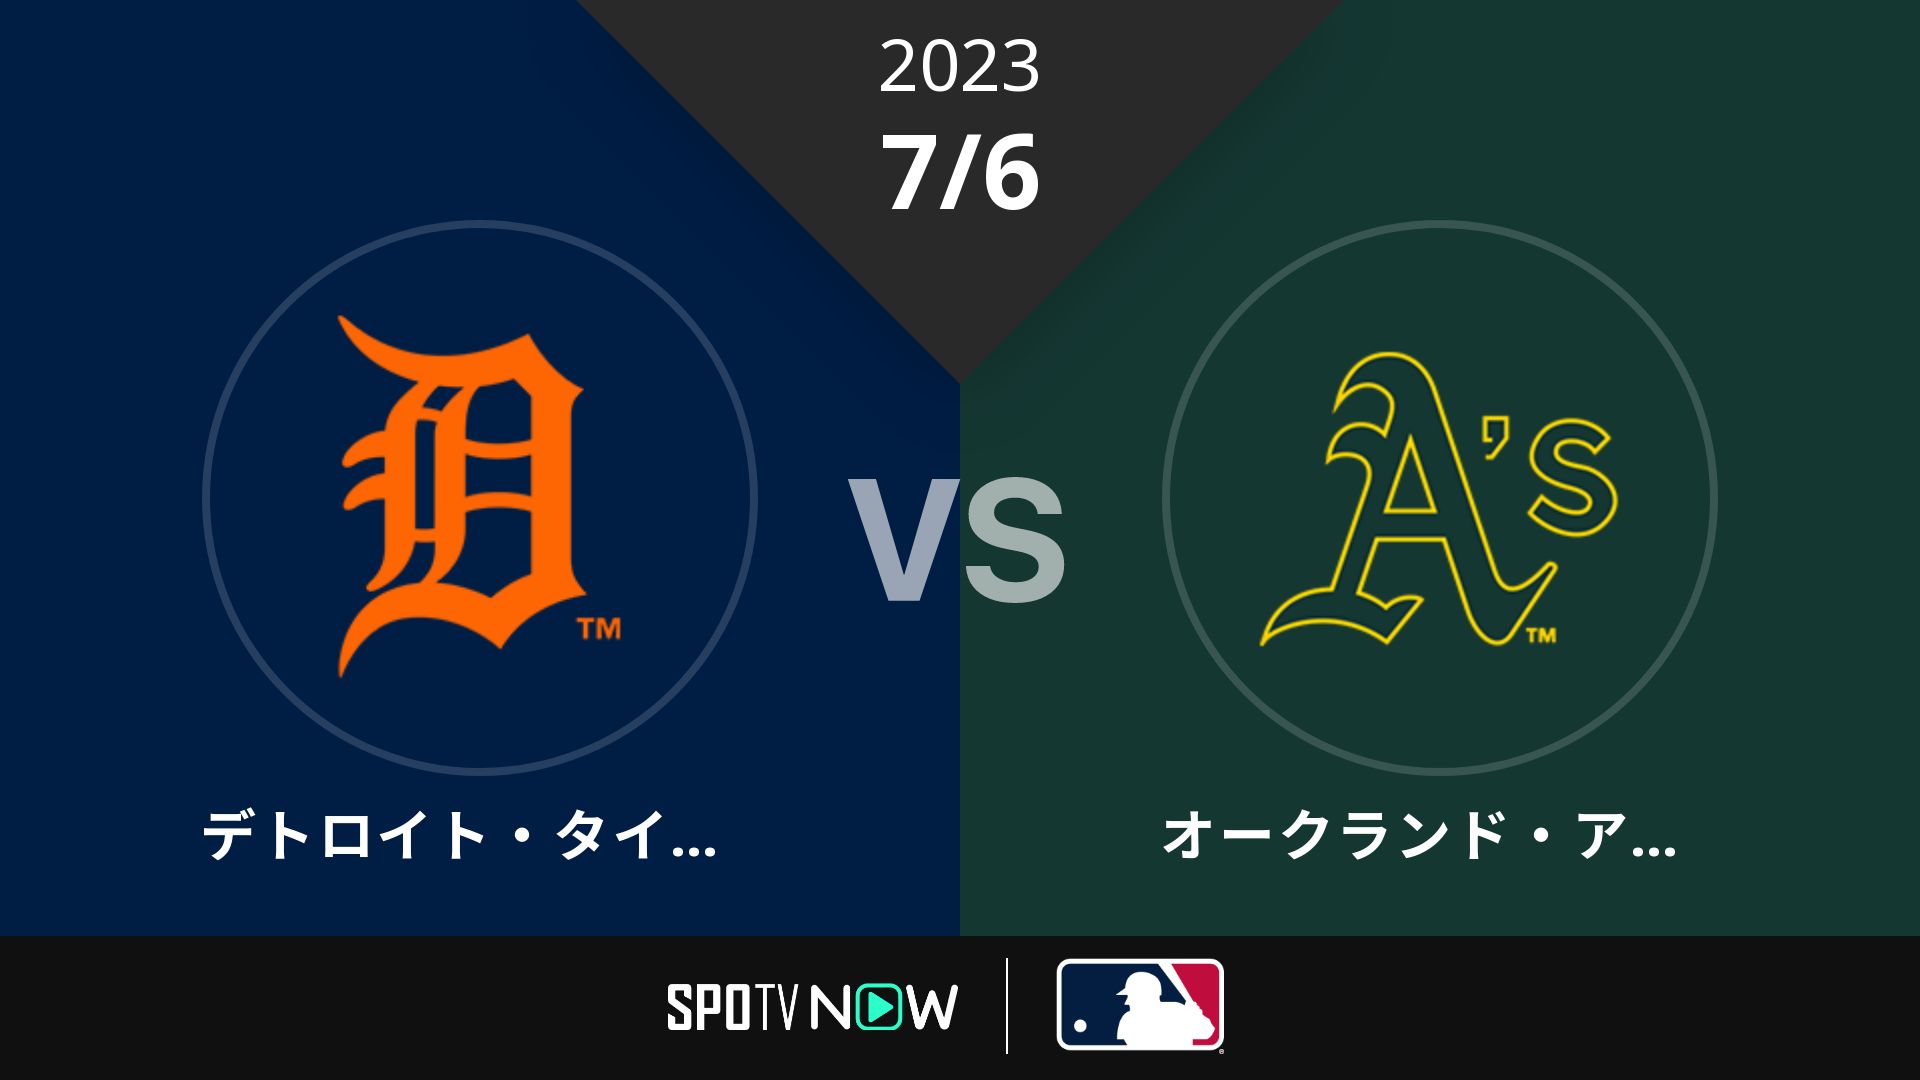 2023/7/6 タイガース vs アスレチックス [MLB]